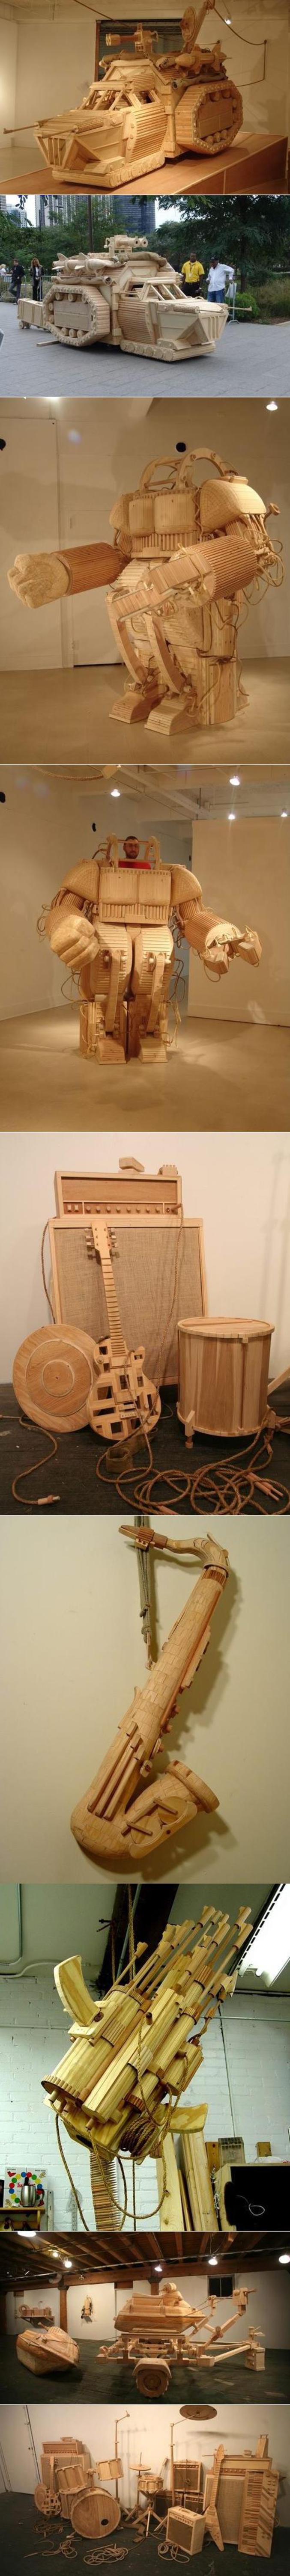 Des objets réalisés entièrement en bois.